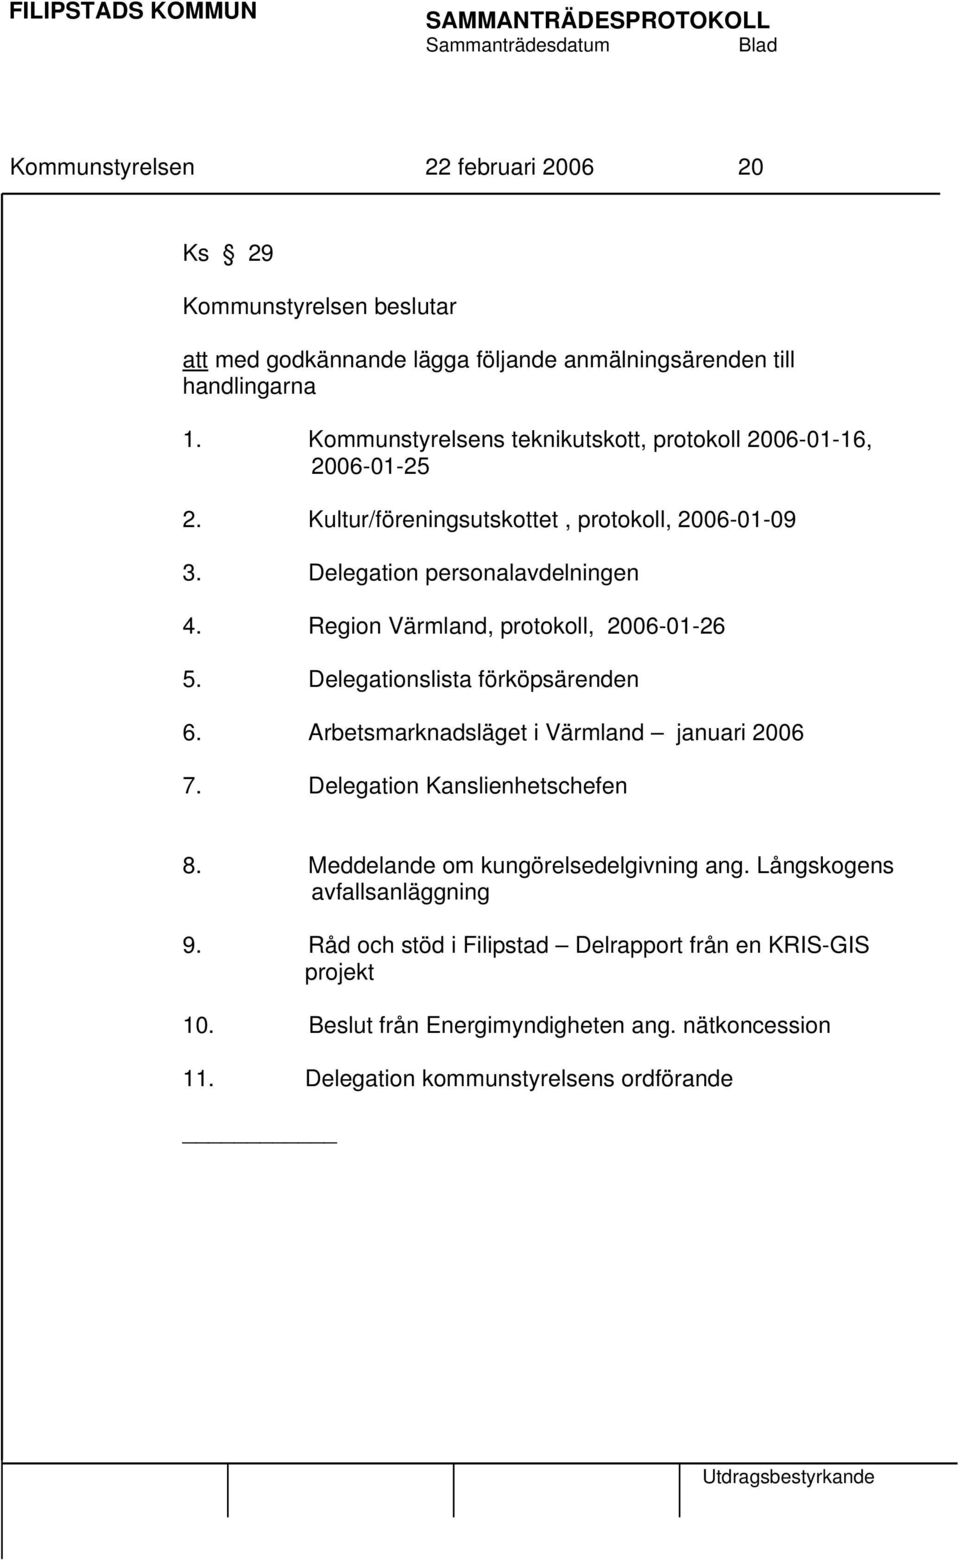 Region Värmland, protokoll, 2006-01-26 5. Delegationslista förköpsärenden 6. Arbetsmarknadsläget i Värmland januari 2006 7. Delegation Kanslienhetschefen 8.